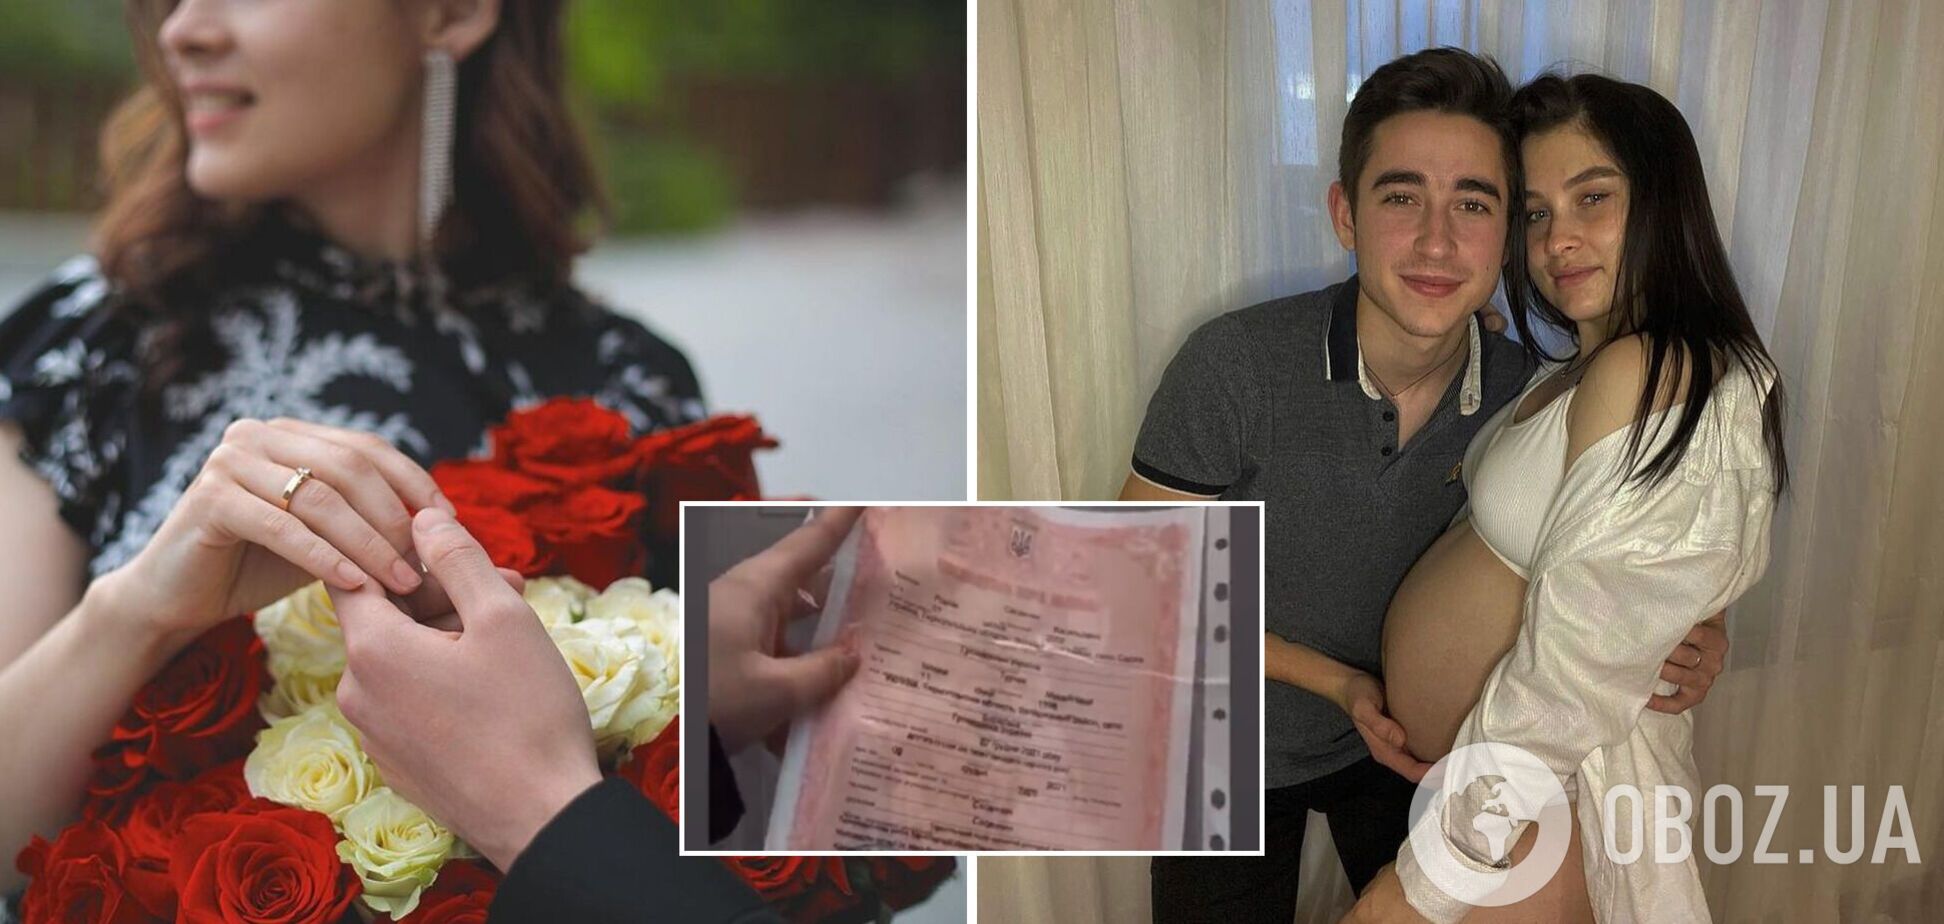 19-летний Роман Сасанчин женился на 23-летней беременной девушке и вот-вот станет папой